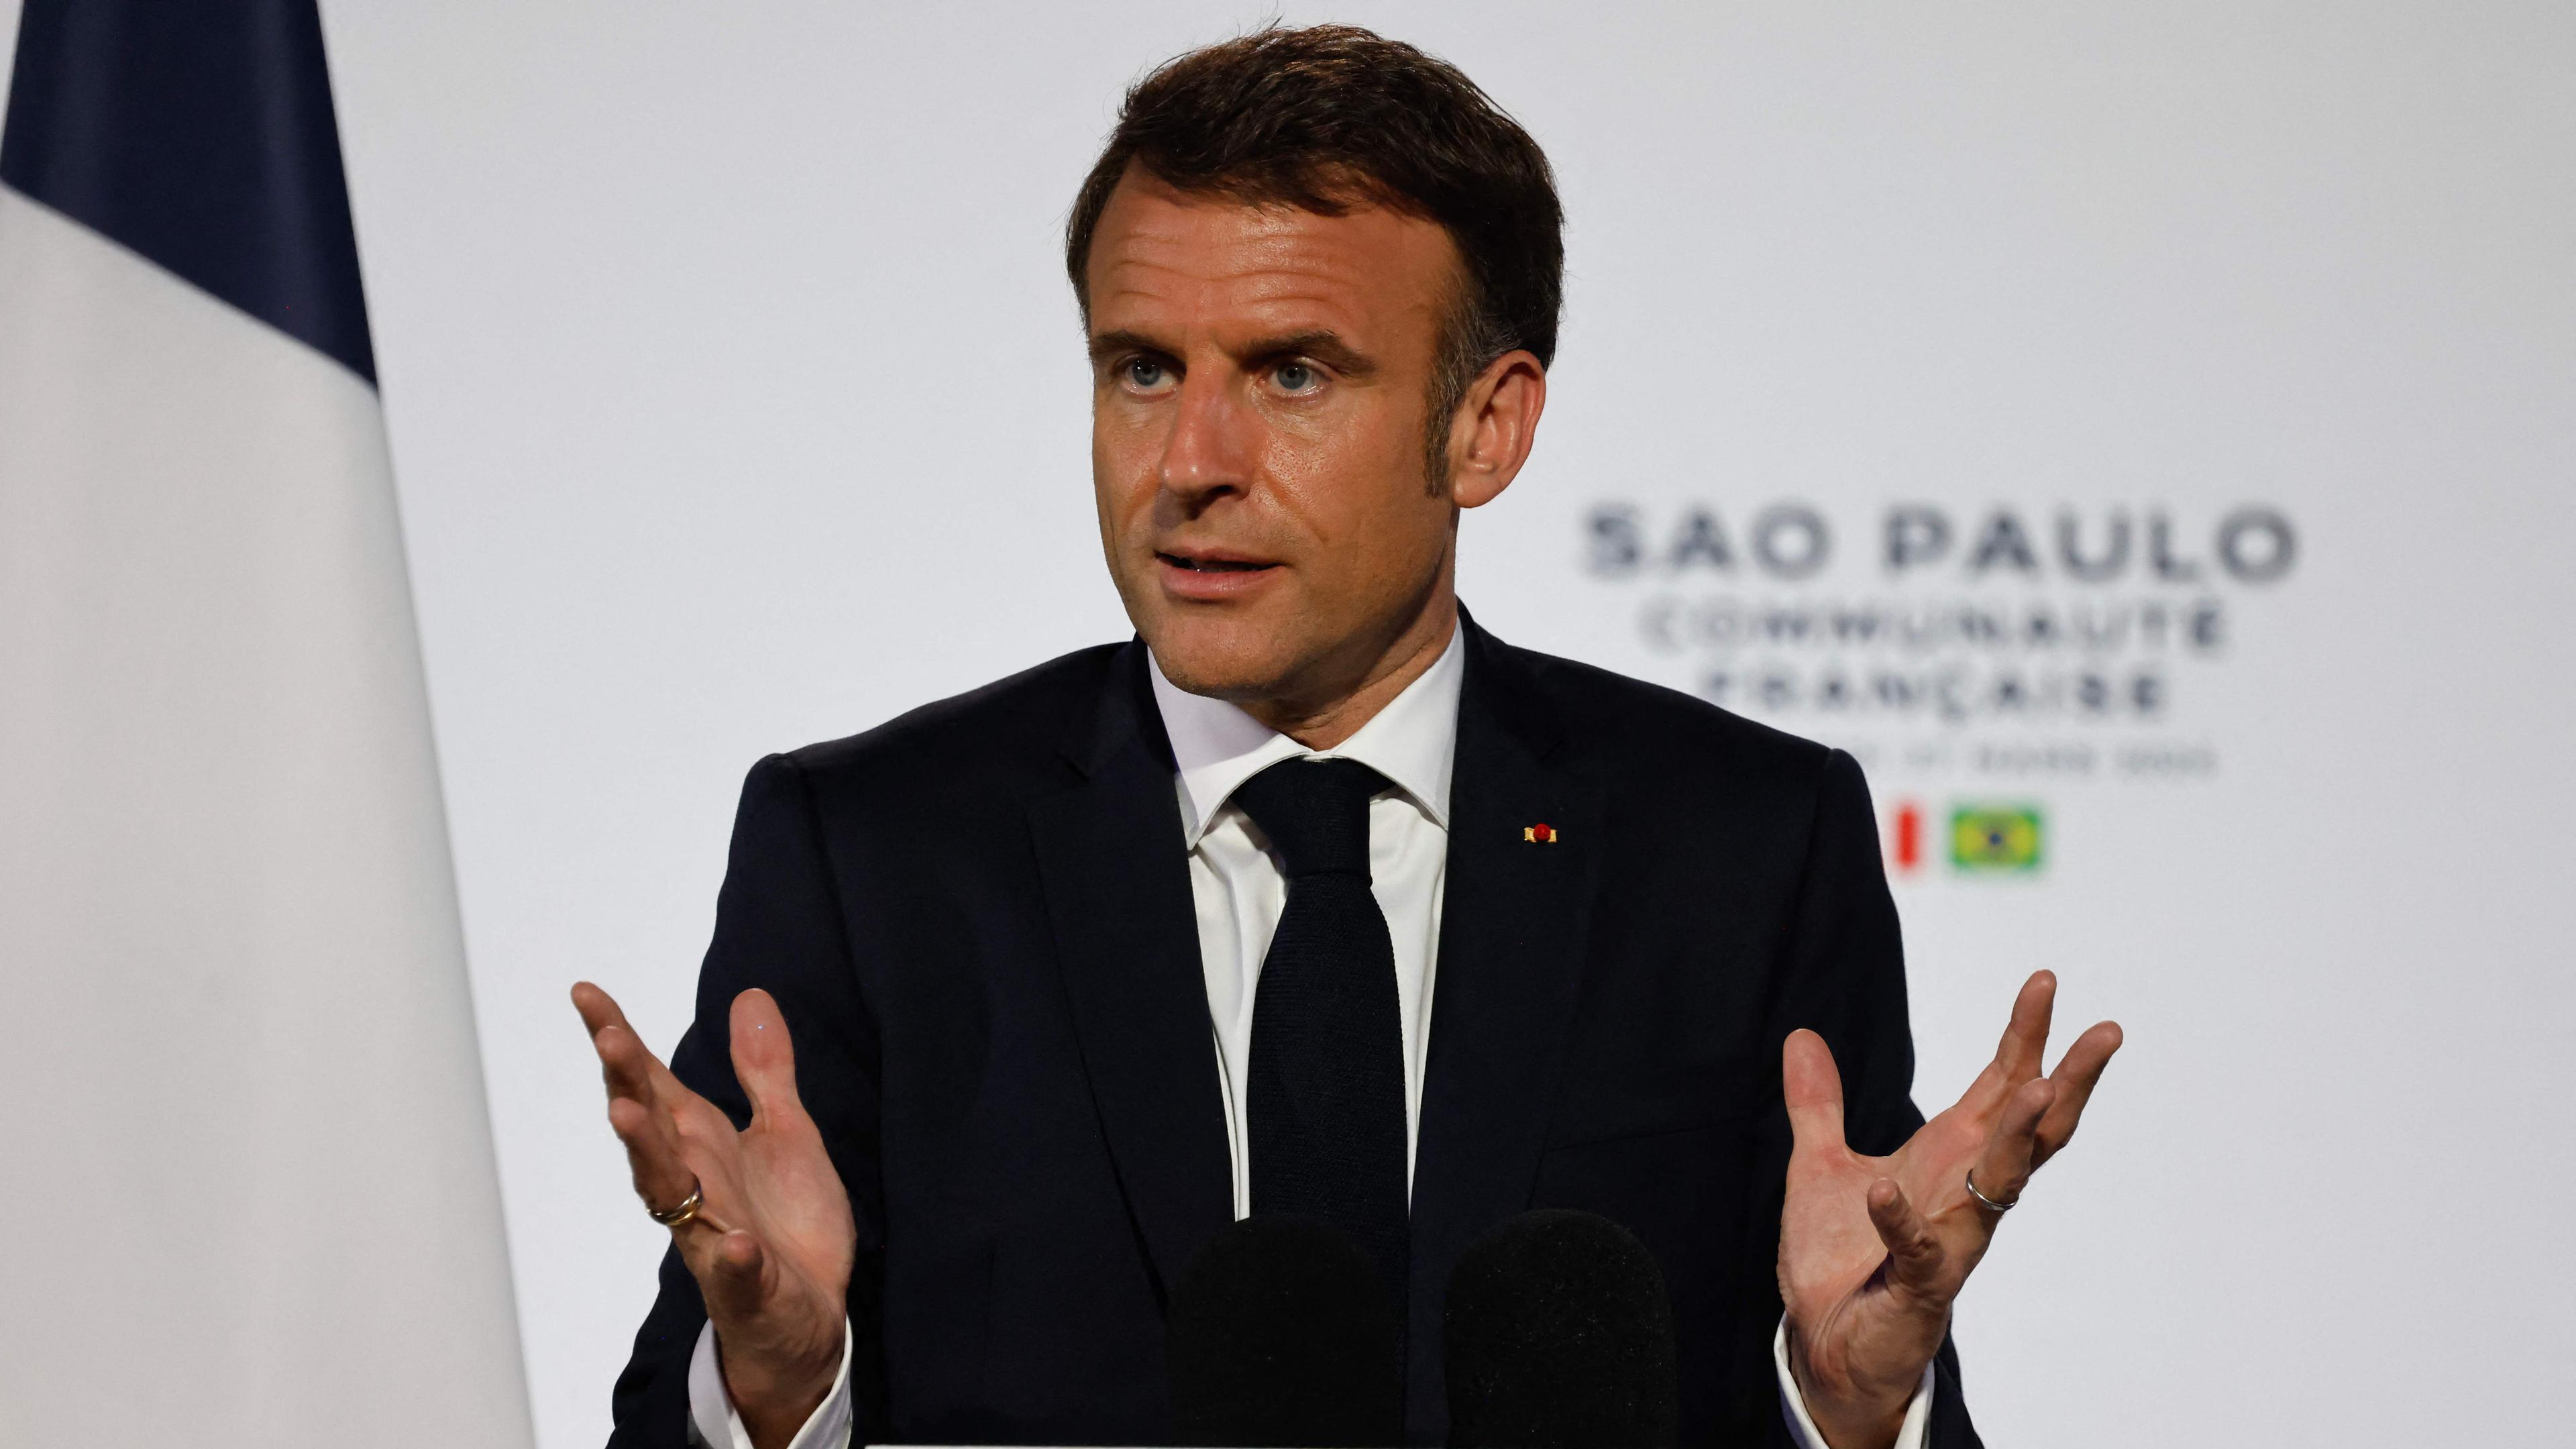 Macron hält eine Rede für die Communaute Francaise in Sao Paulo